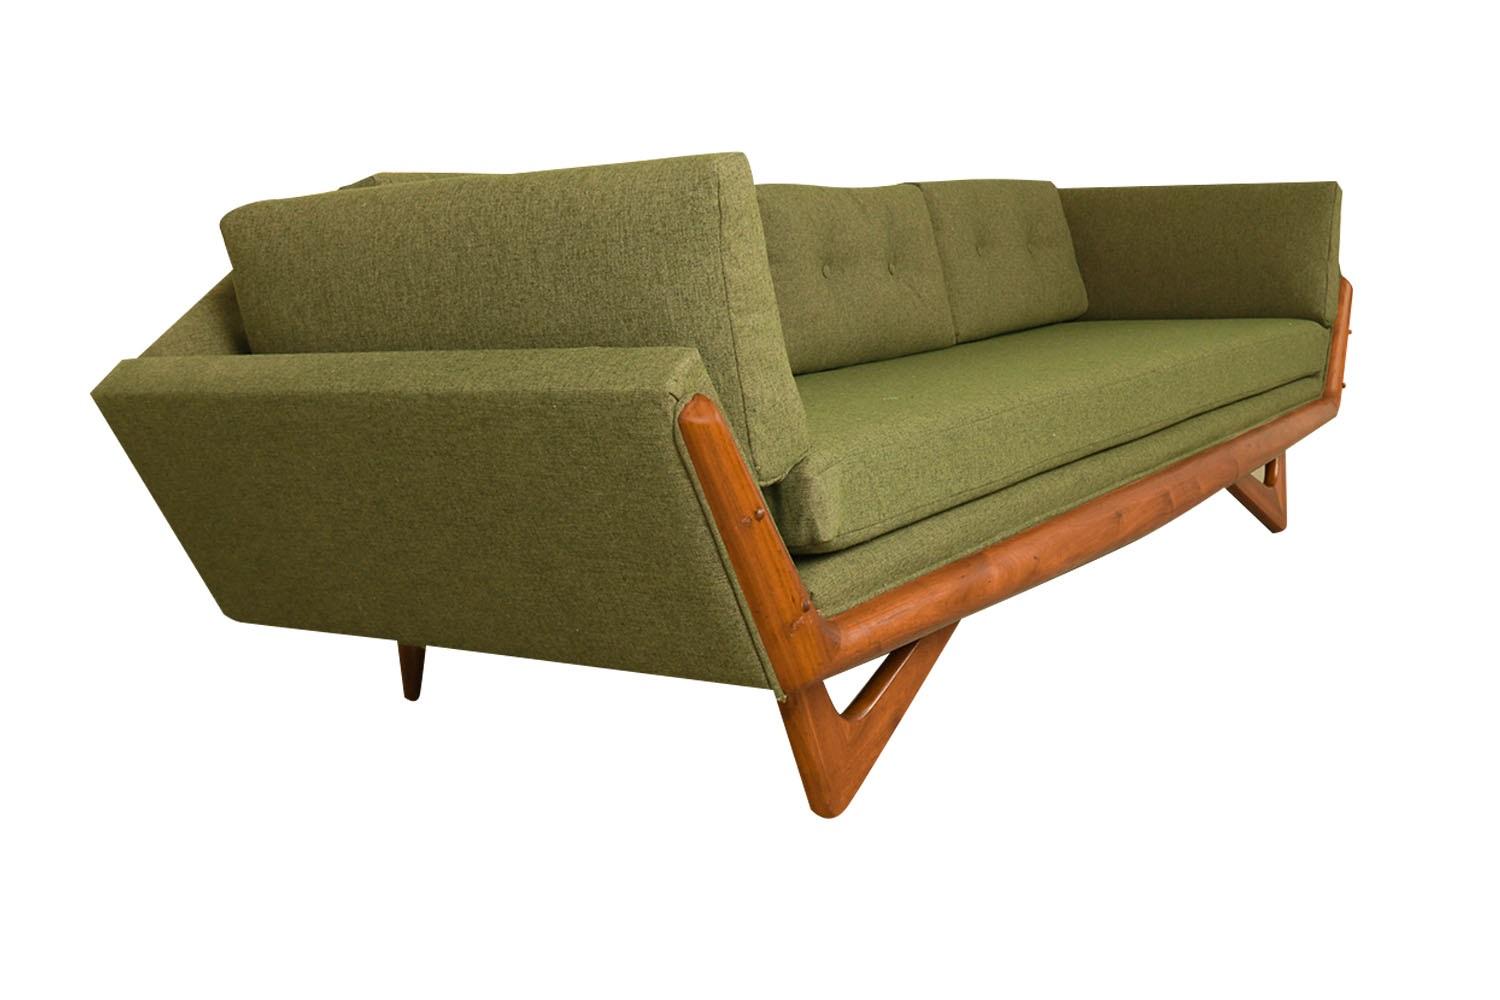 Atemberaubend schönes, hochwertiges, langes Gondelsofa mit Nussbaumrahmen, Modell 2640-S, entworfen von Adrian Pearsall für Craft Associates, Mitte des Jahrhunderts. Mit neuem Polsterstoff und hochdichtem Schaumstoff. Ein außergewöhnliches Sofa,